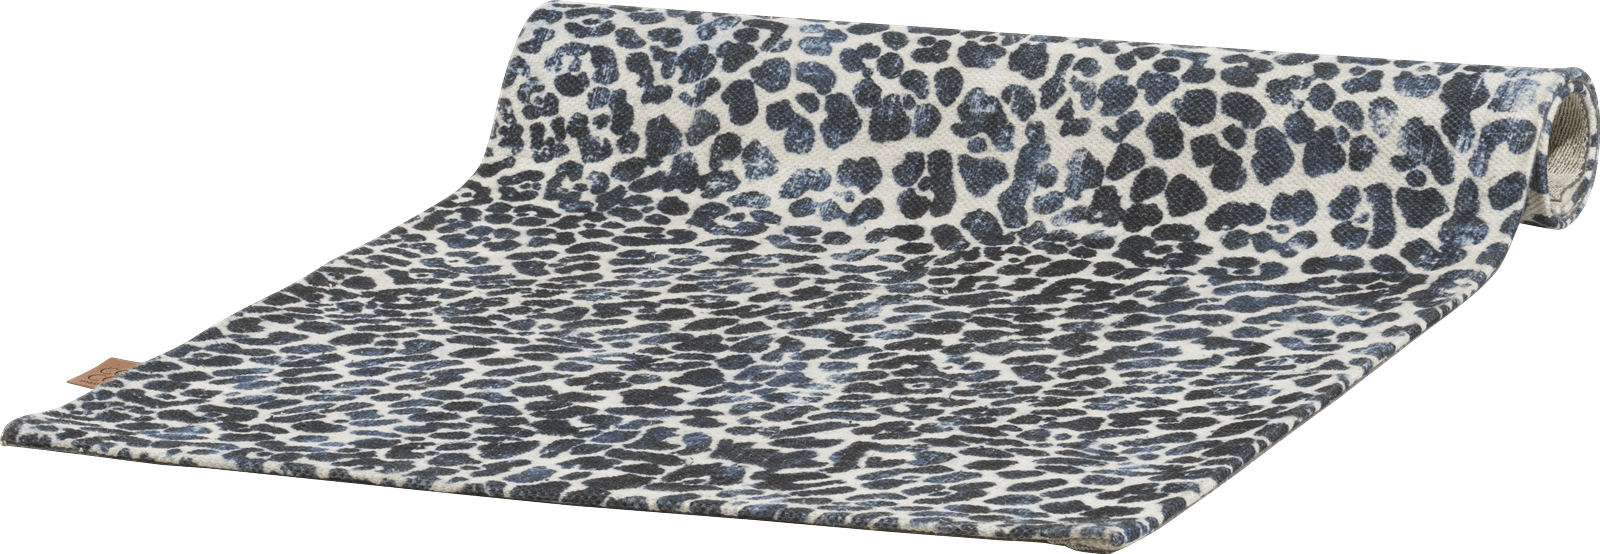 COCOmaison - Coco Maison - Industriel - Leopard tapis 90x150cm